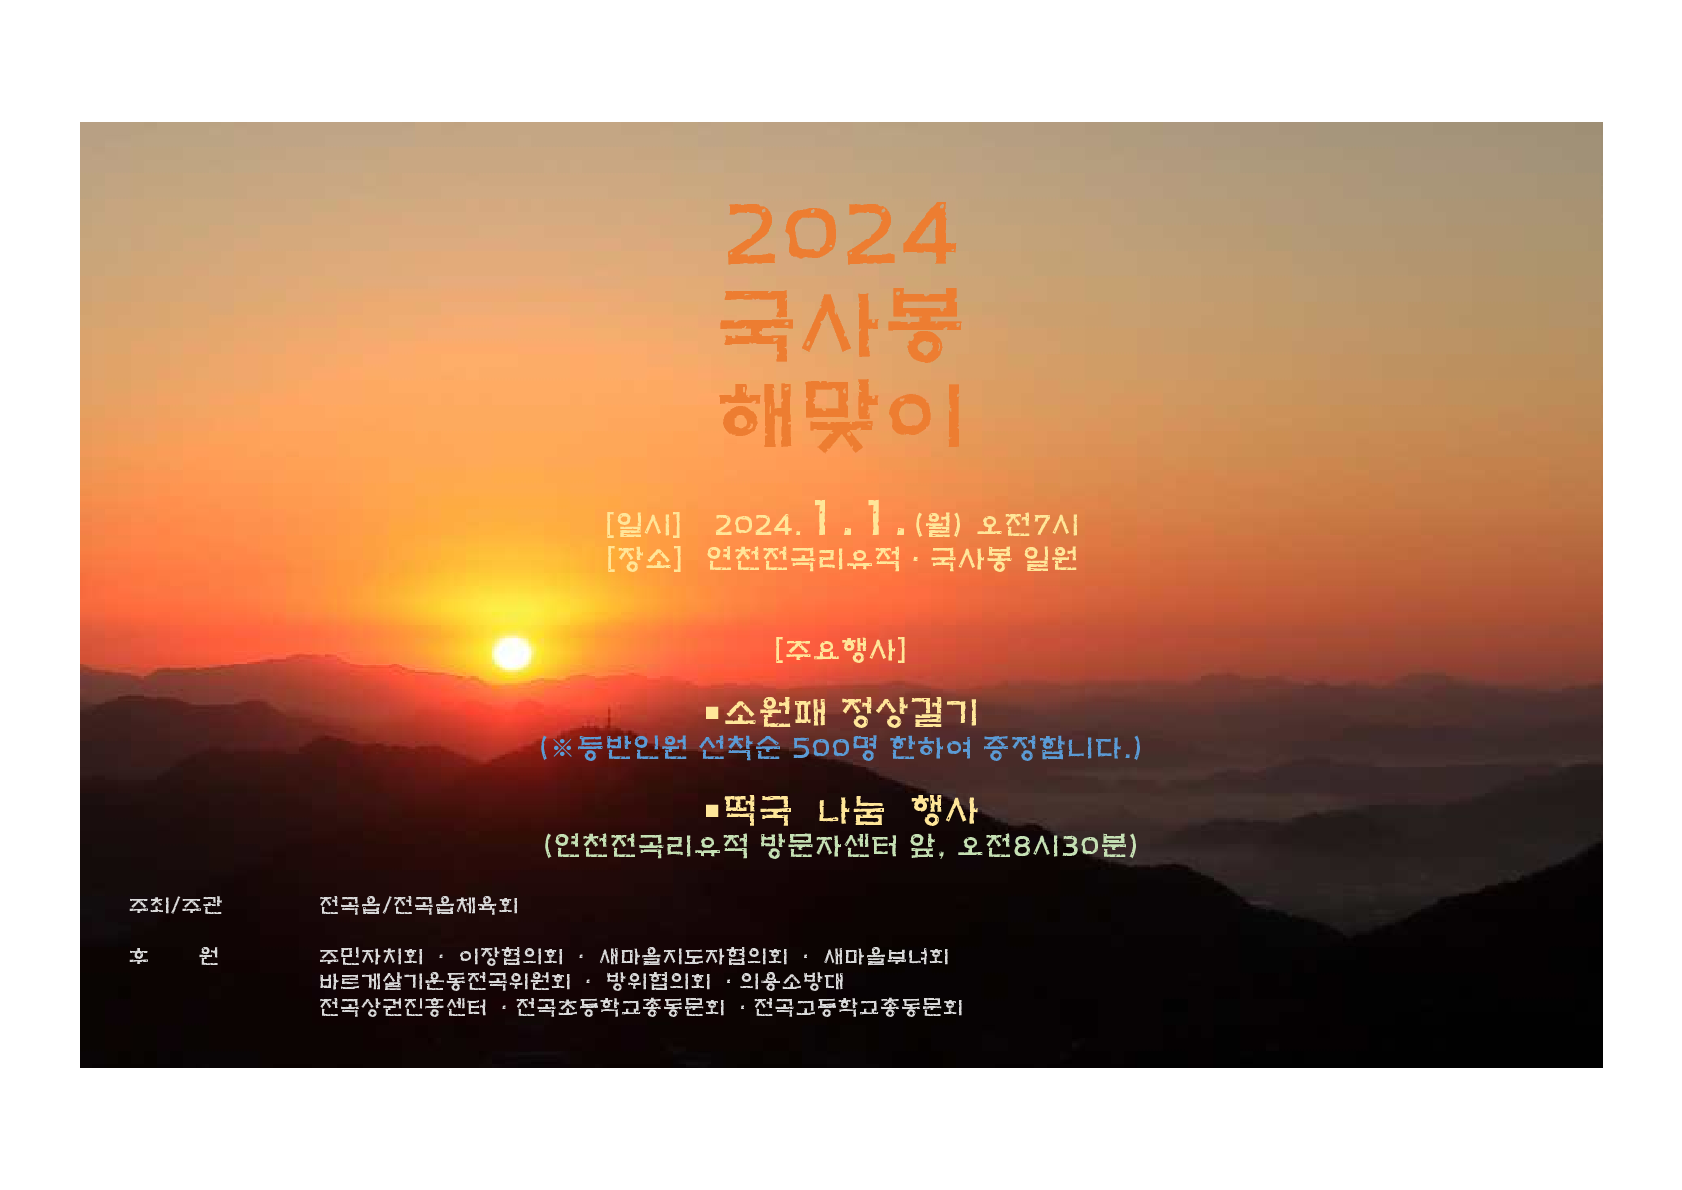 2024년 국사봉 신년 해맞이 행사 개최 이미지 1 - 본문에 자세한설명을 제공합니다.